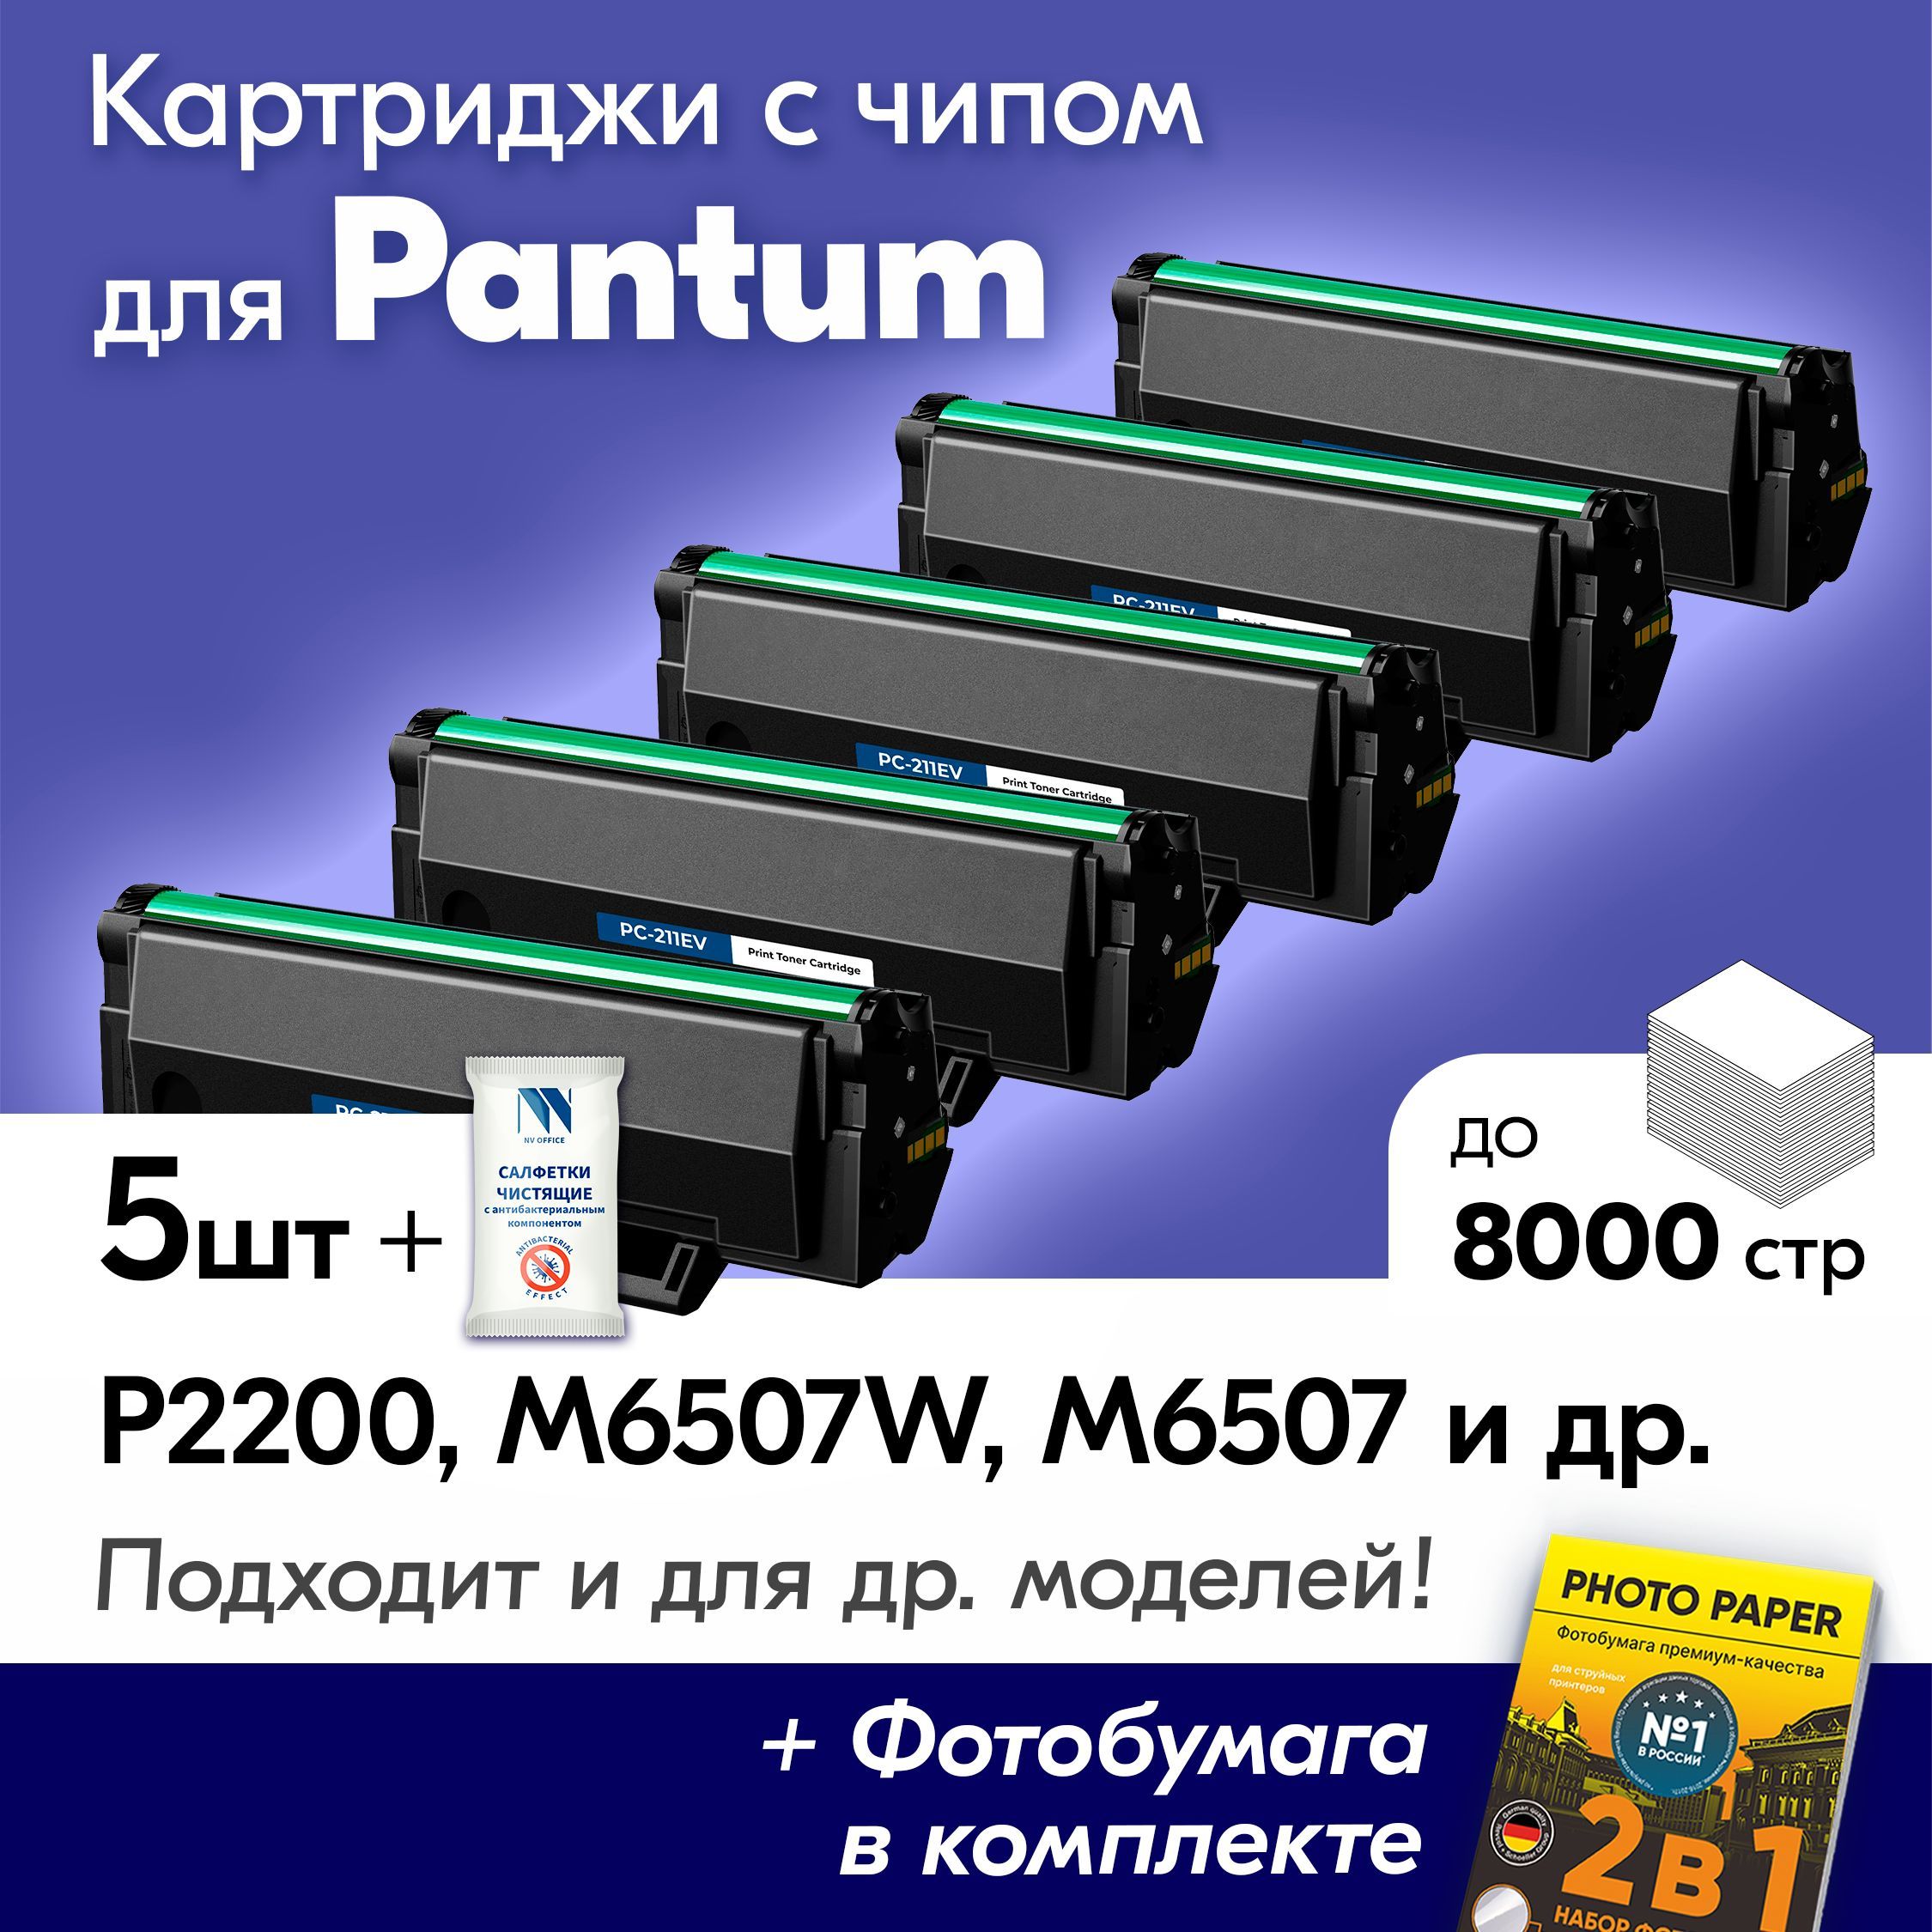 Pantum p2500nw. Принтер лазерный Pantum p2502. Pantum m6507w отзывы